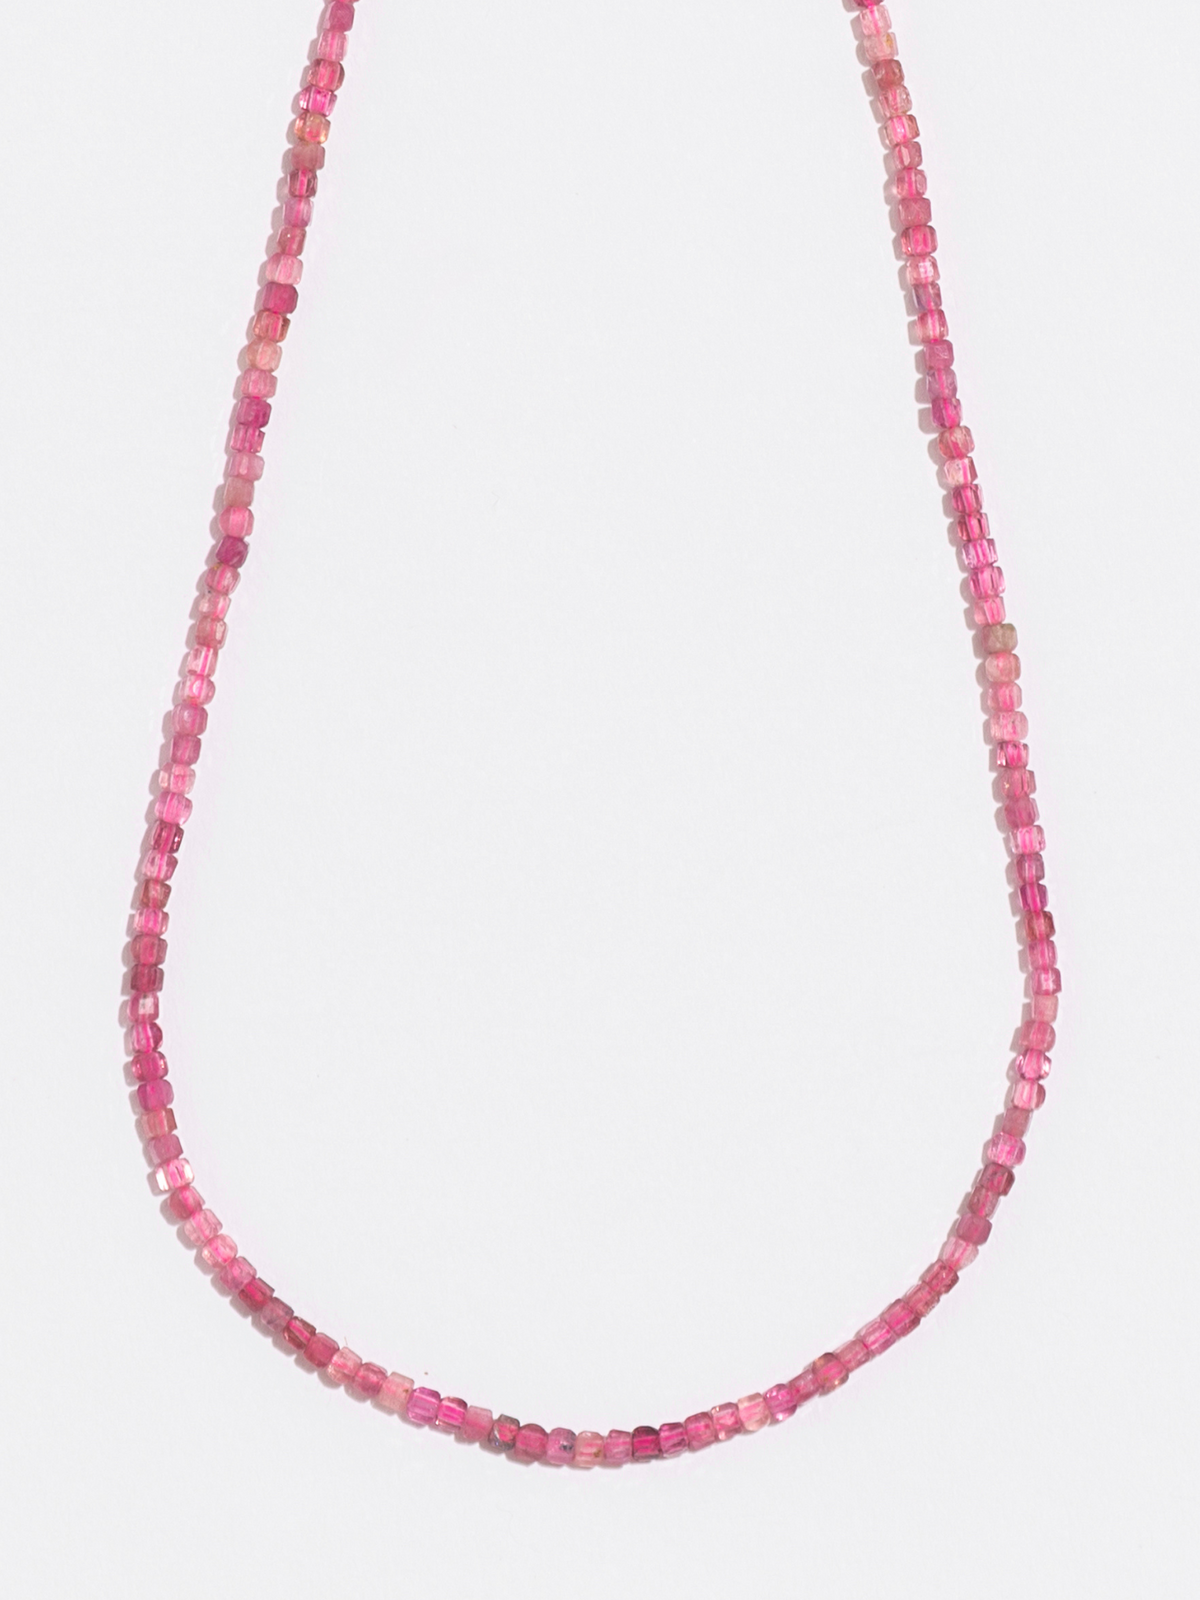 Annie Pink Tourmaline Necklace